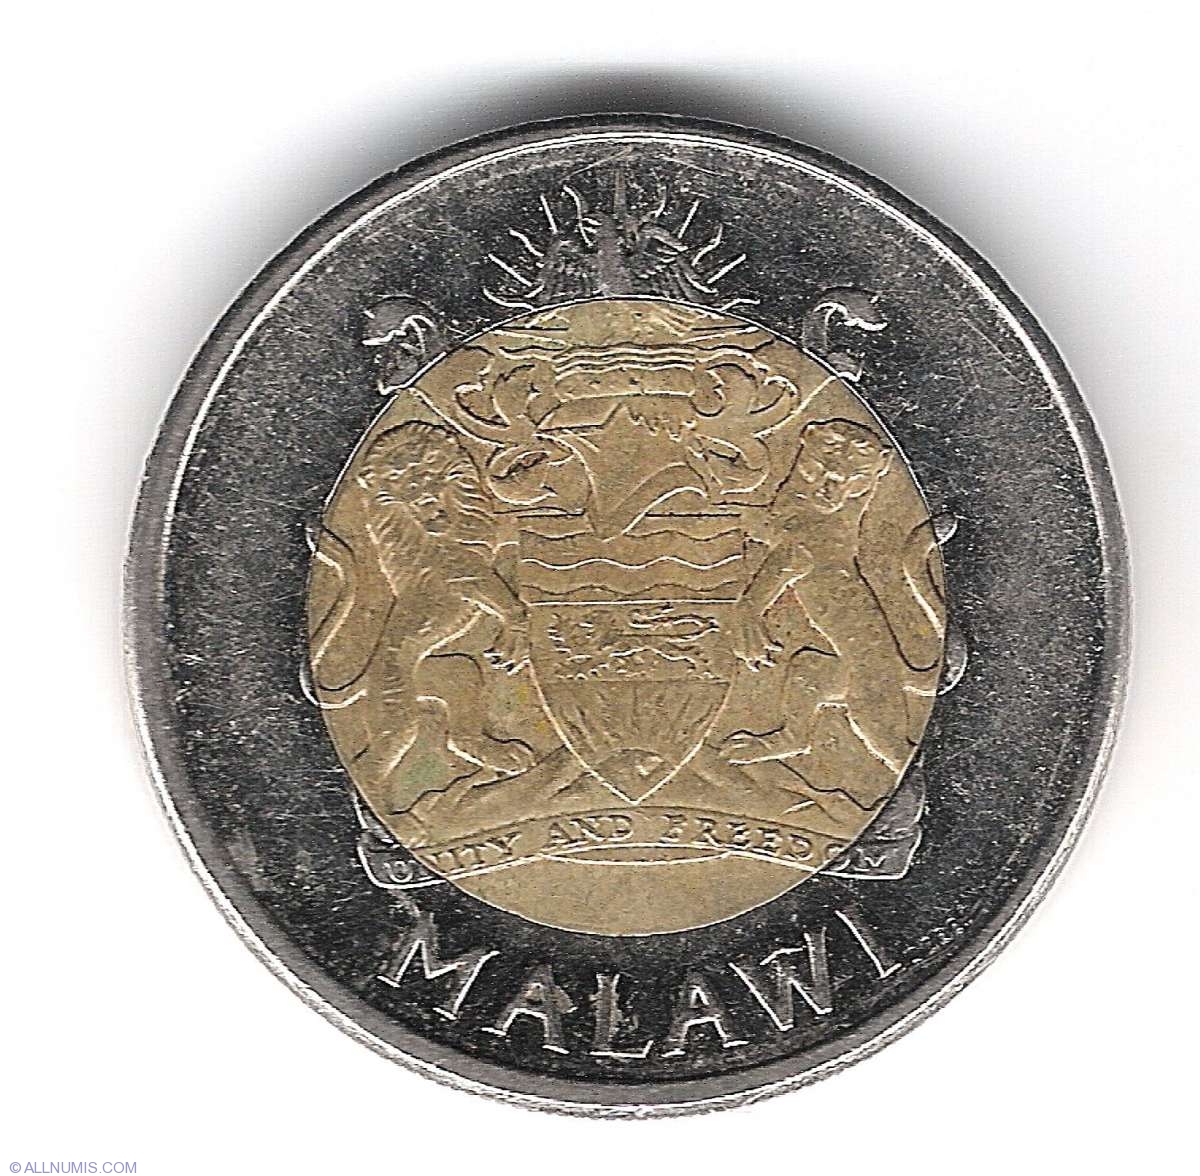 MALAWI 5 KWACHA 2006 BI-METALLIC COIN UNC